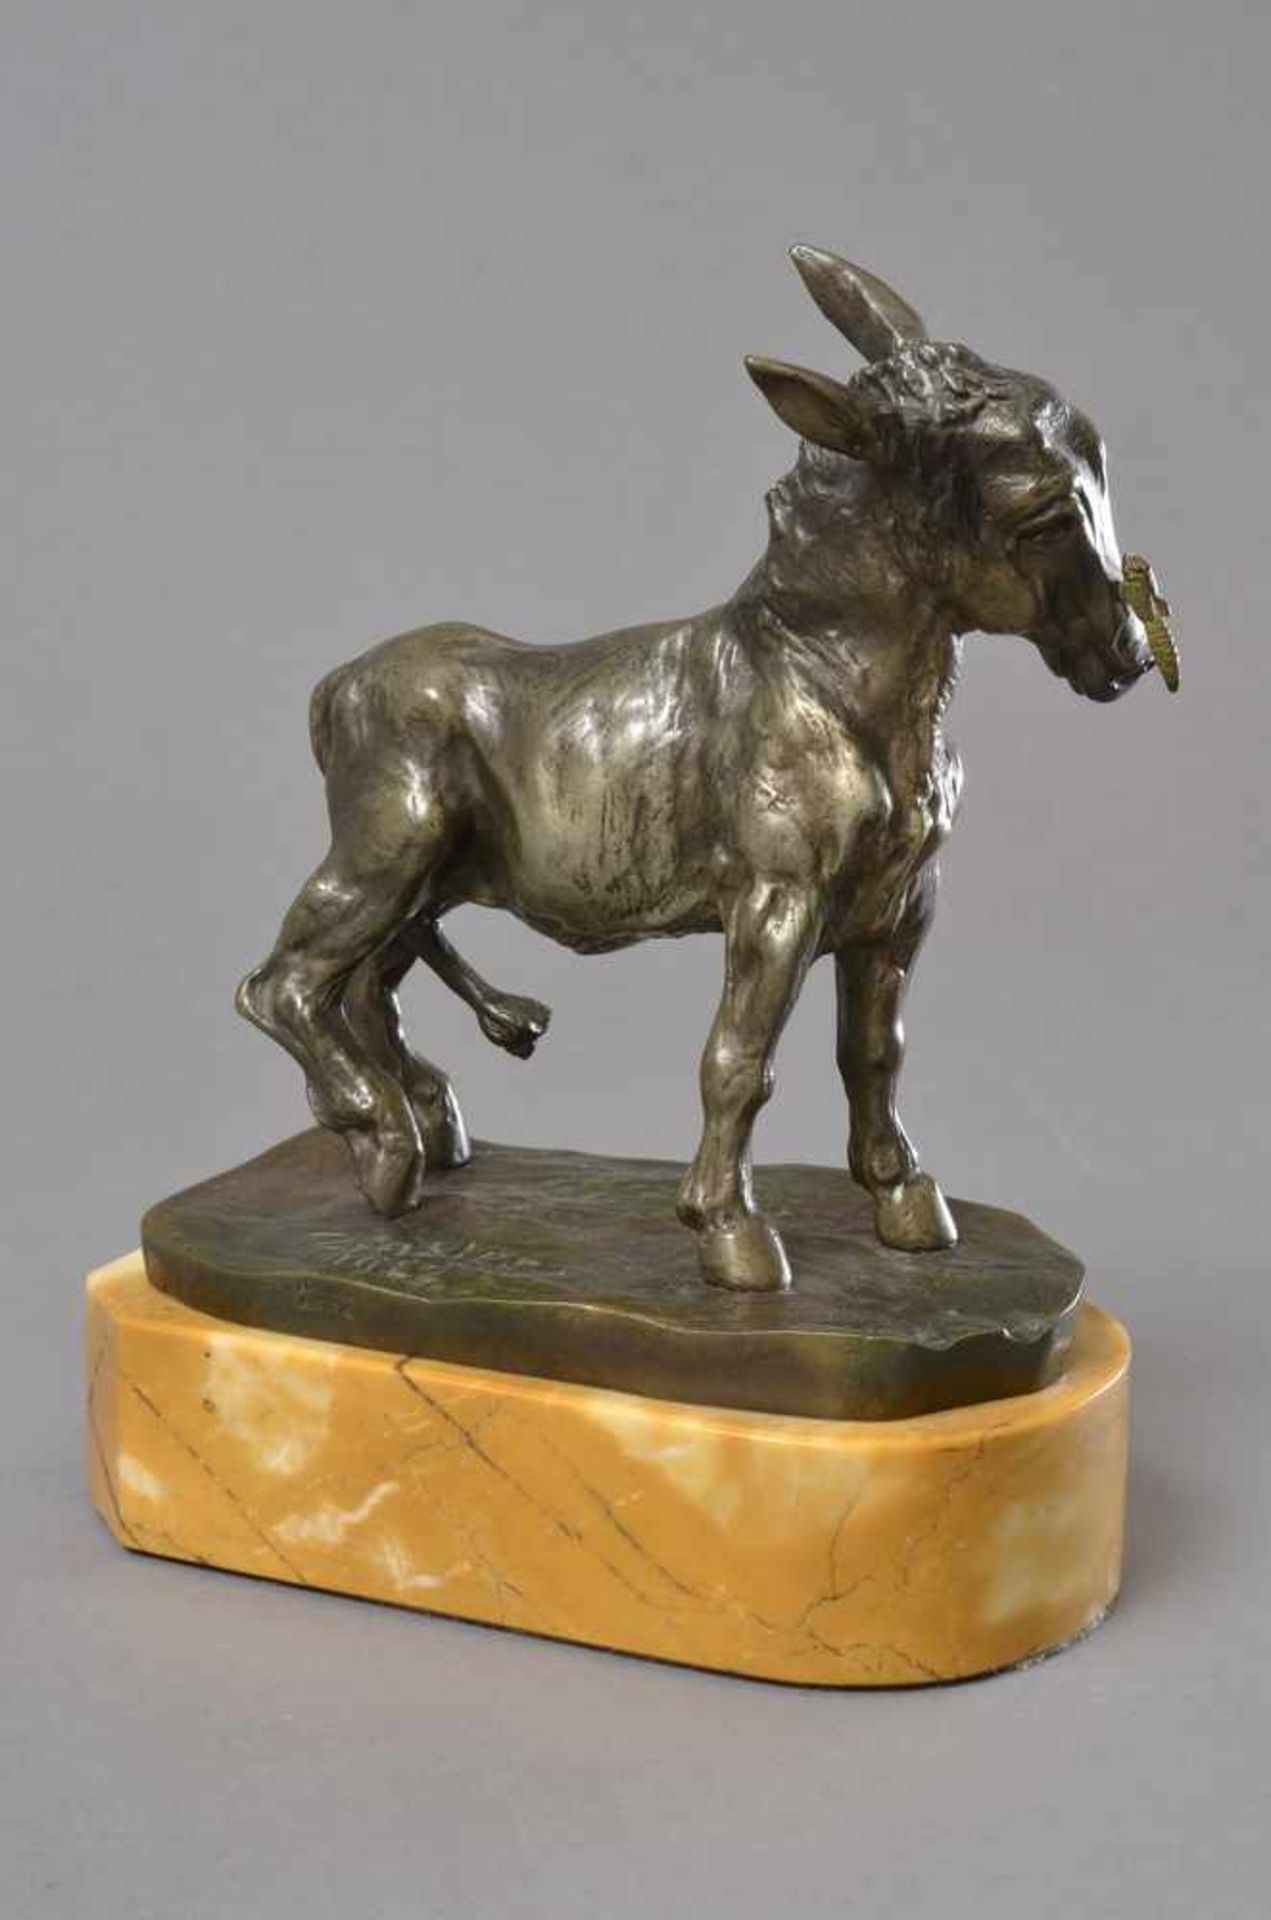 Zinsler, Carl Anselm (1867-1940) "Esel mit Bremse an der Nase" 1922, galvanisierter Zinkguss, - Bild 2 aus 3